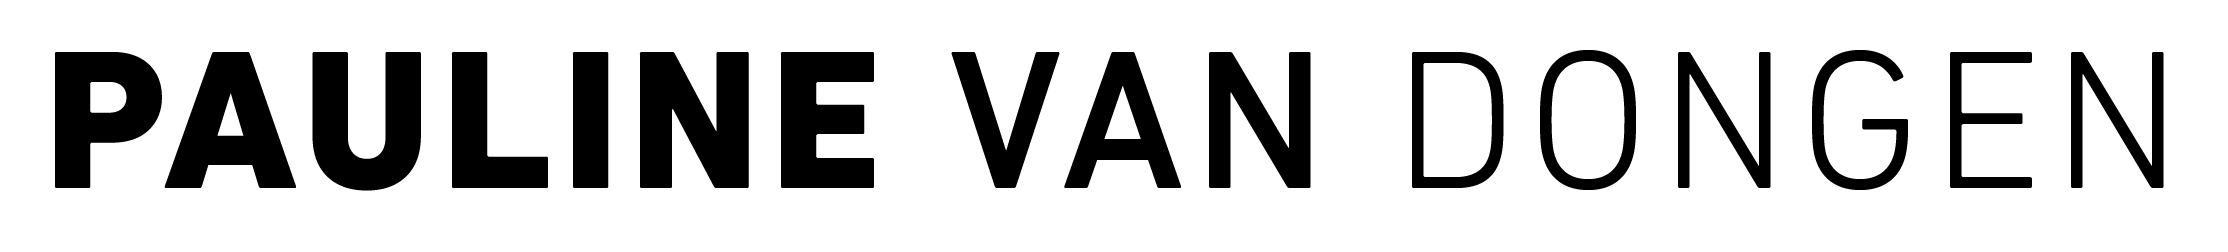 Organisations logo image for Pauline van Dongen 